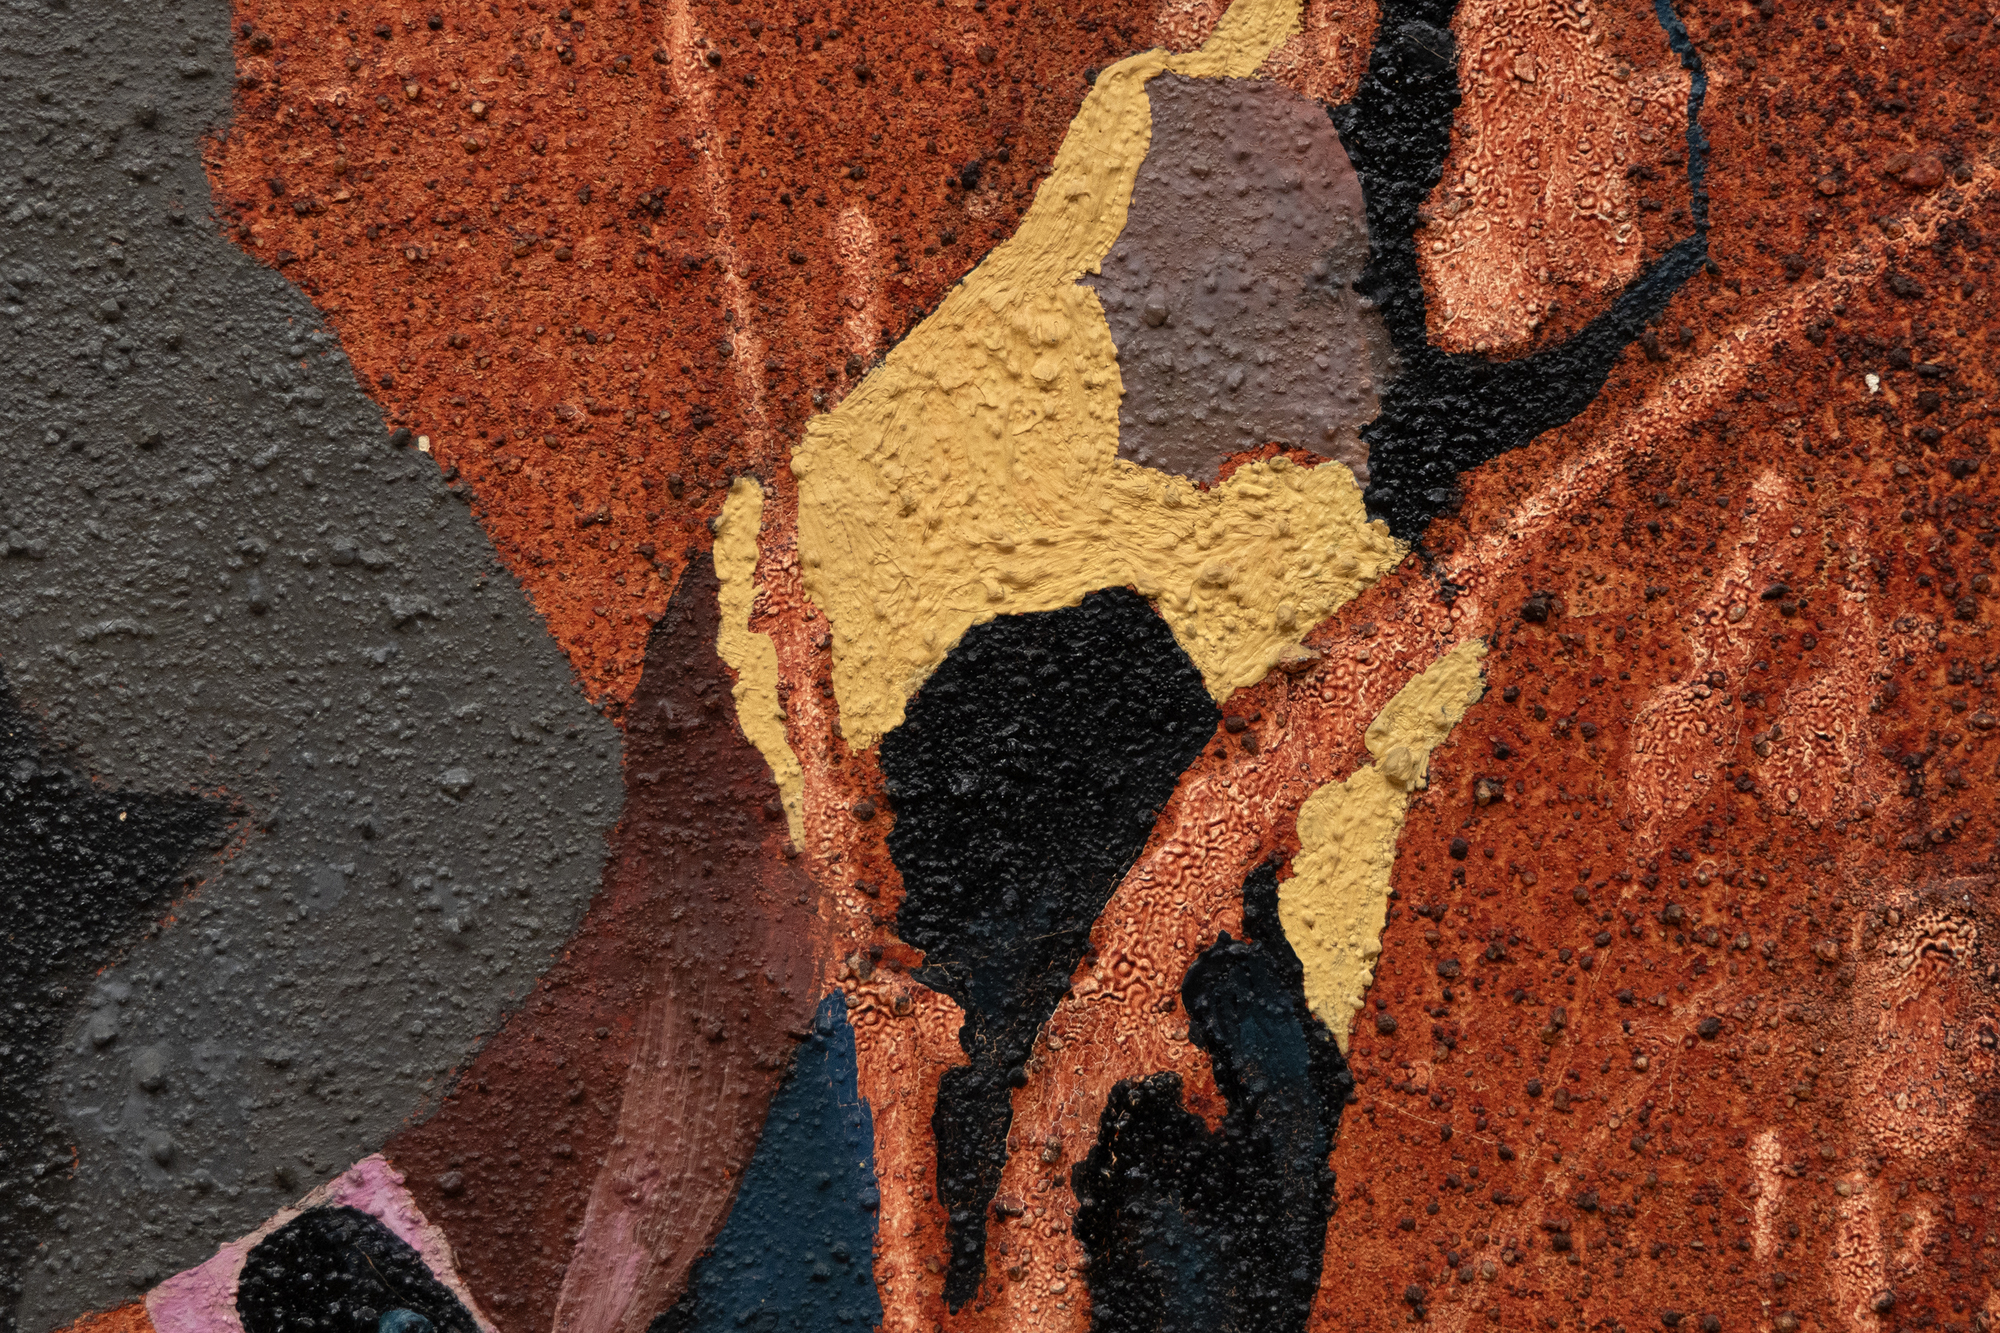 Lorsque Dorothy Hood peint Genies en 1956, elle explore de nouveaux territoires, développant diverses méthodes et un vocabulaire de formes organiques tirées de ses observations de la nature et du corps humain. Indépendamment de leur nature ambiguë et transformatrice, les éléments abstraits et figuratifs s’engagent dans une interaction dynamique, tissant ensemble, entrelaçant et fusionnant les identités au sein d’une soupe métaphysique. Plutôt que la stase formelle d’une tapisserie tissée, dans Genies, l’abstraction respire, s’étire et s’écoule dans un champ d’énergie de vrilles sinueuses en forme de ruban. C’est une œuvre qui incarne une fusion de l’abstraction et du surréalisme. Sa profondeur de champ implicite, sa perspective et ses références figuratives suggèrent une femme dont le corps voûté imprègne l’œuvre d’une profondeur émotionnelle, psychologique ou mythologique. Ces éléments capturent l’essence complexe de la position et de la situation d’une femme, confondant efficacement les frontières entre deux mouvements artistiques distincts.